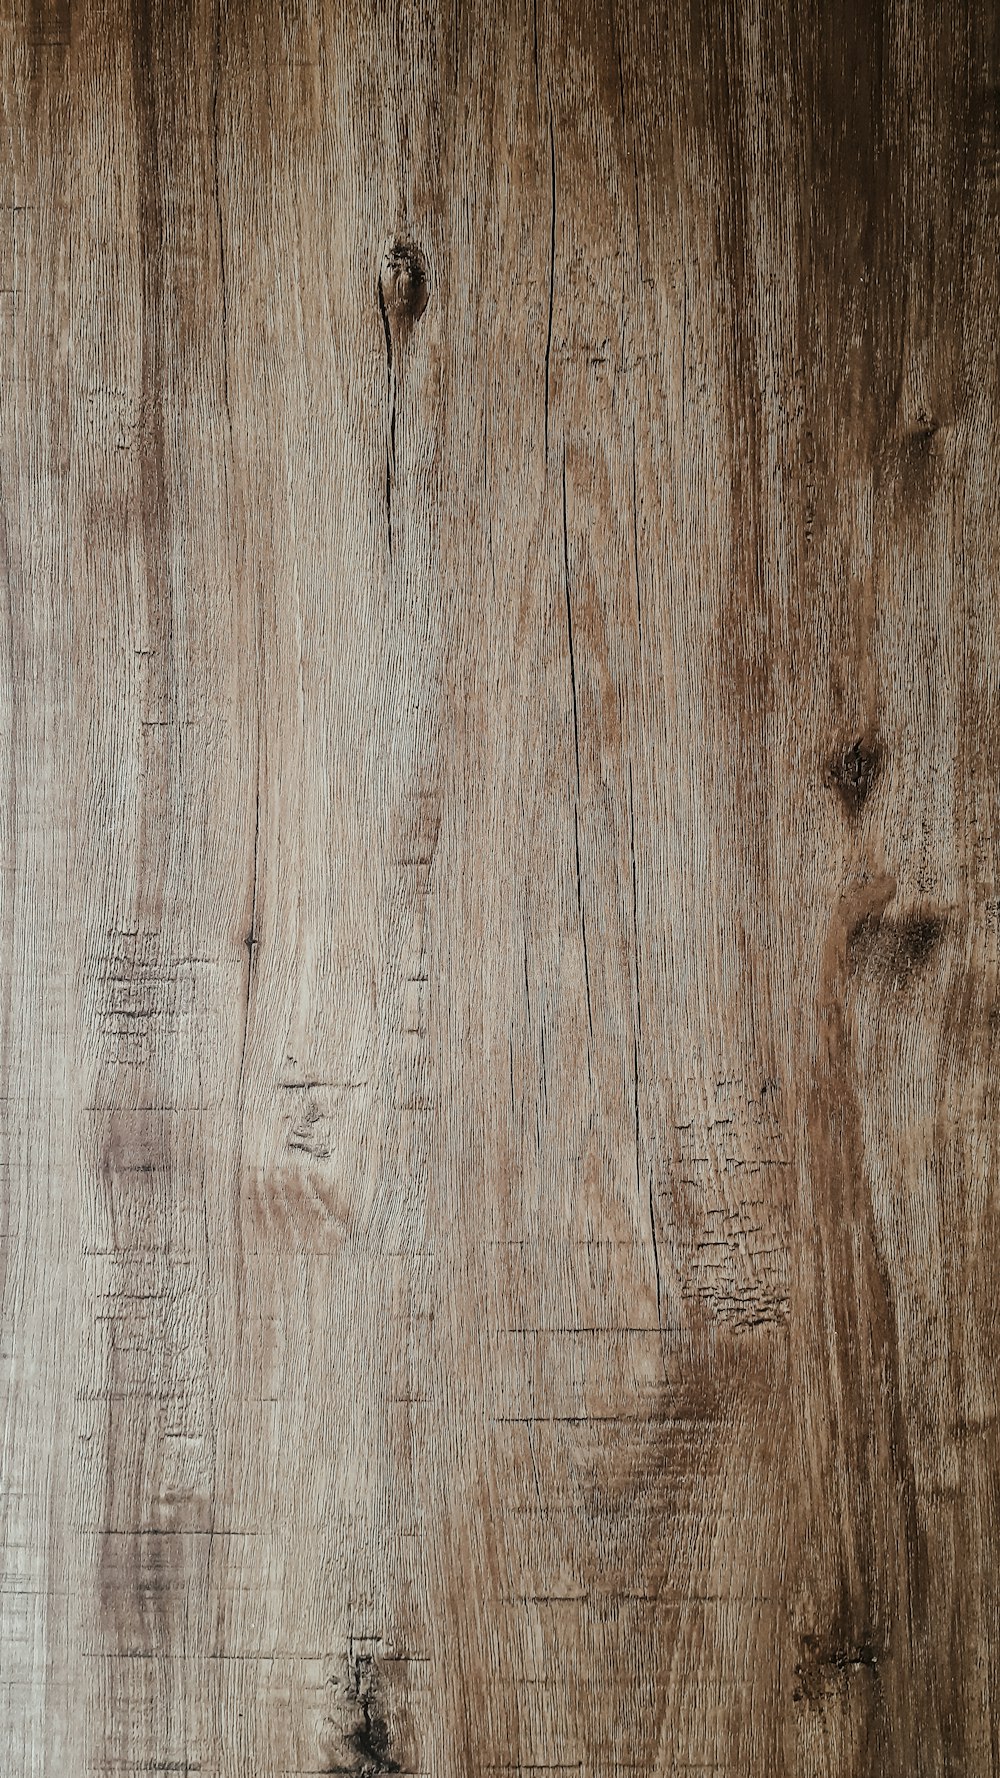 Bạn muốn tìm kiếm những hình ảnh gỗ vân đẹp mà không lo về bản quyền hay phải trả tiền? Hãy đến với sưu tập hình ảnh gỗ vân miễn phí từ Unsplash. Với hơn 750 ảnh đẹp mắt và chất lượng, bạn chắc chắn sẽ tìm thấy những hình ảnh gỗ vân mà mình yêu thích. Tải ngay về máy để sử dụng nhé!